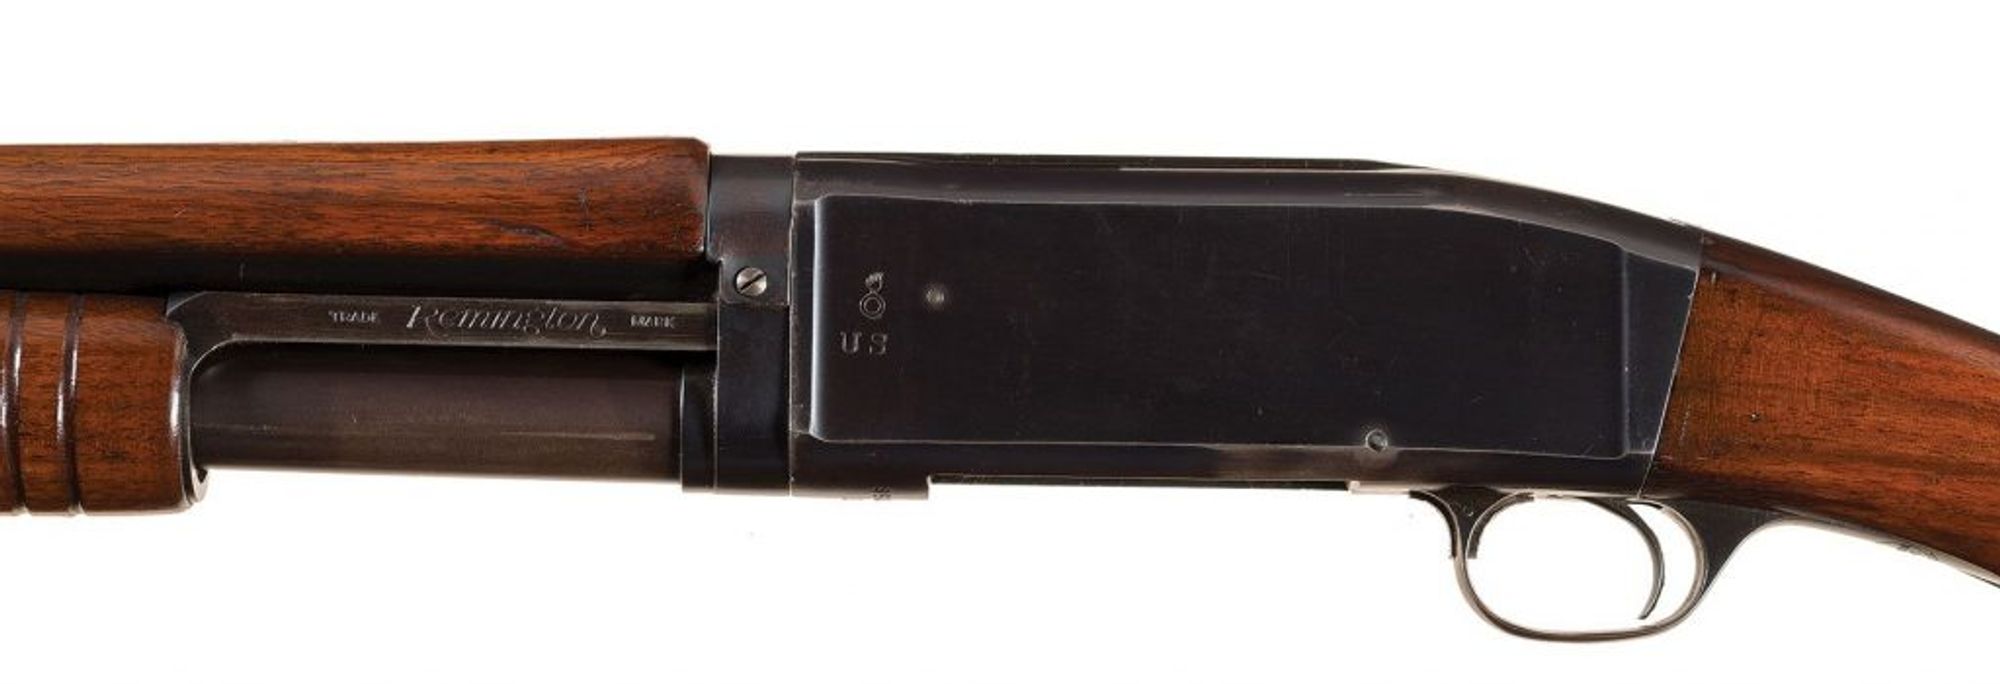 Remington Model 10 army shotgun